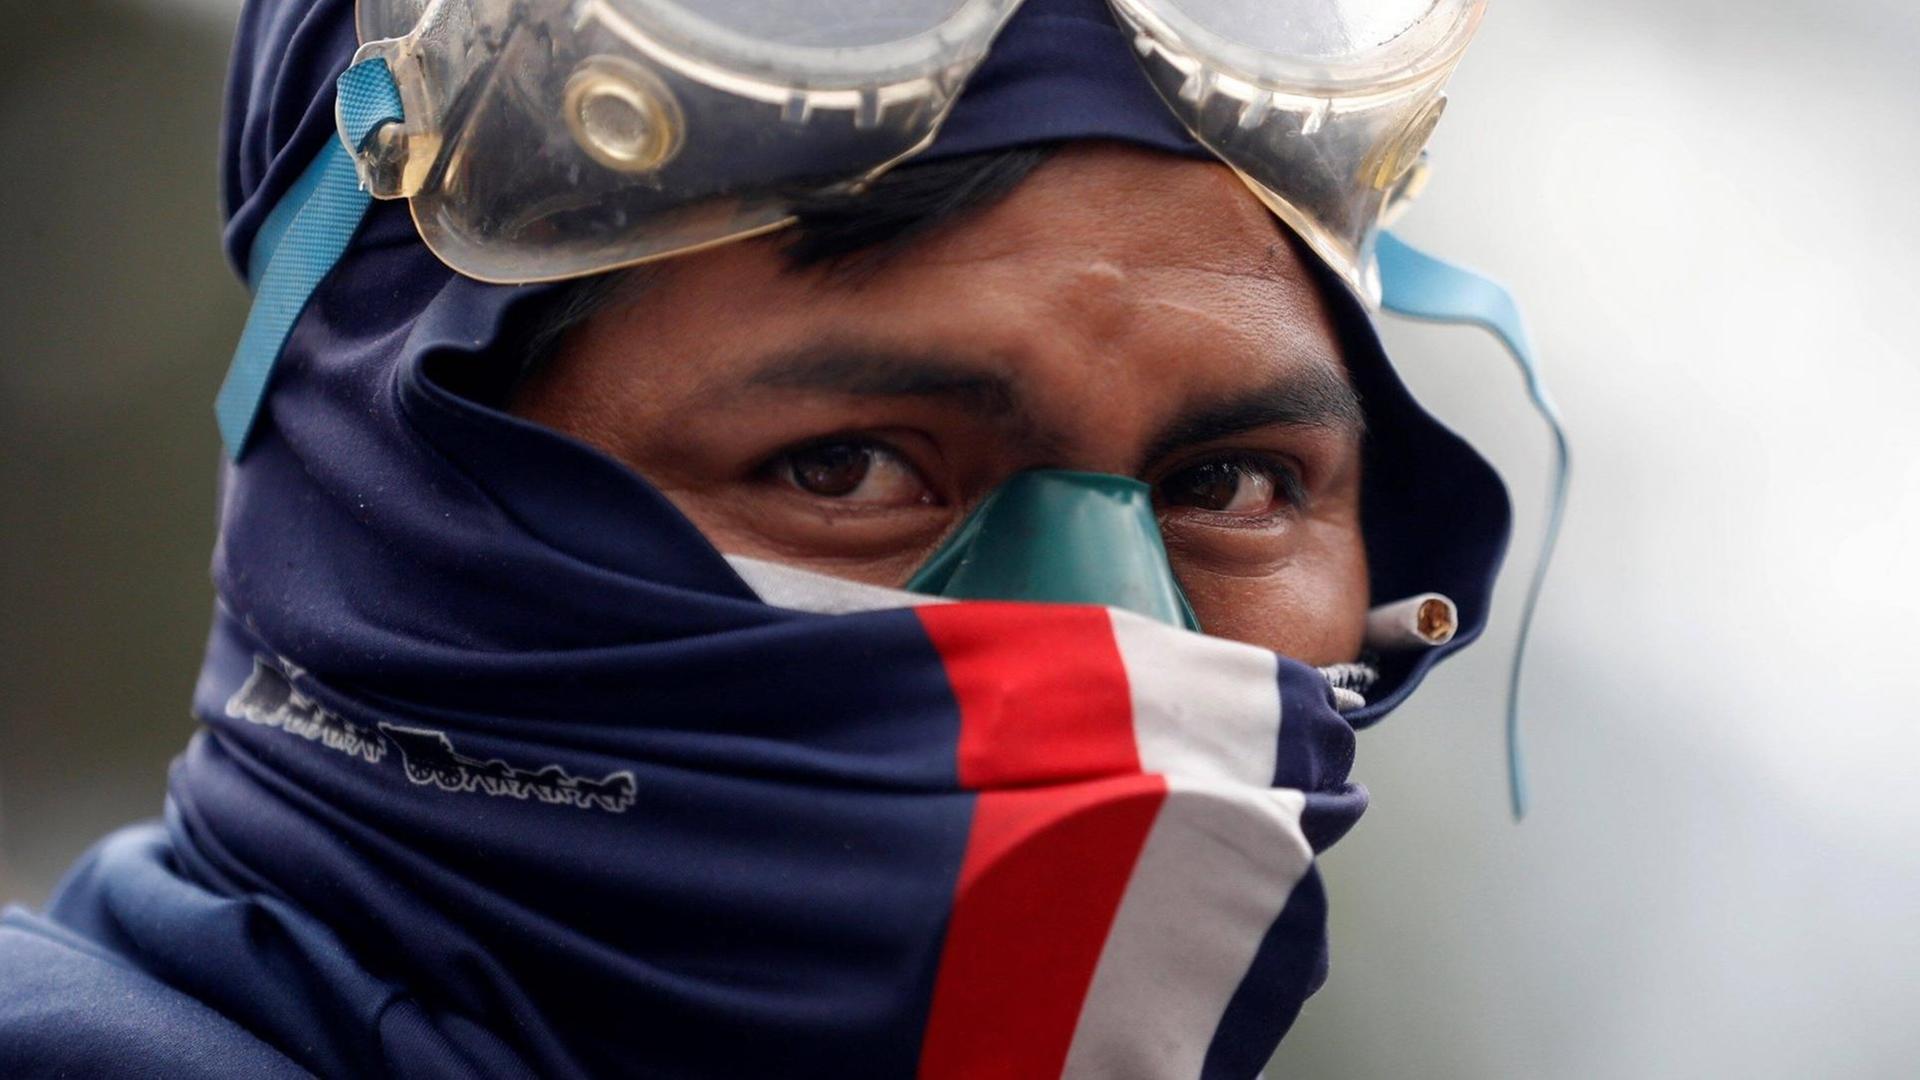 Großaufnahme eines verhüllten Demonstranten mit Schutzbrille auf der Stirn, der ernst und entschlossen ins Off des Bildes blickt.